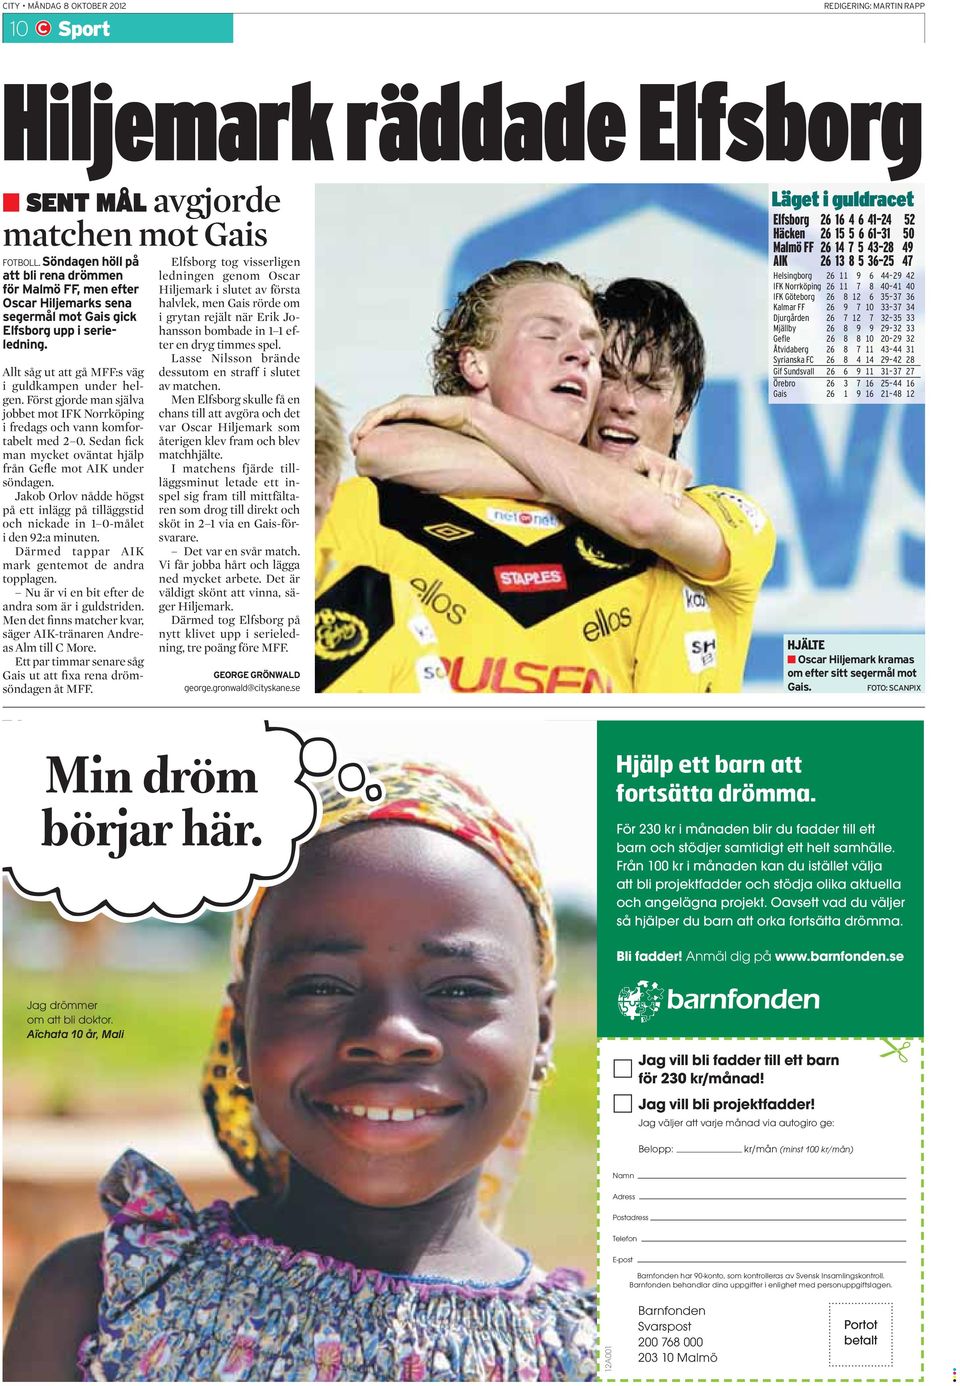 Först gjorde man själva jobbet mot IFK Norrköping i fredags och vann komfortabelt med 2 0. Sedan fick man mycket oväntat hjälp från Gefle mot AIK under söndagen.